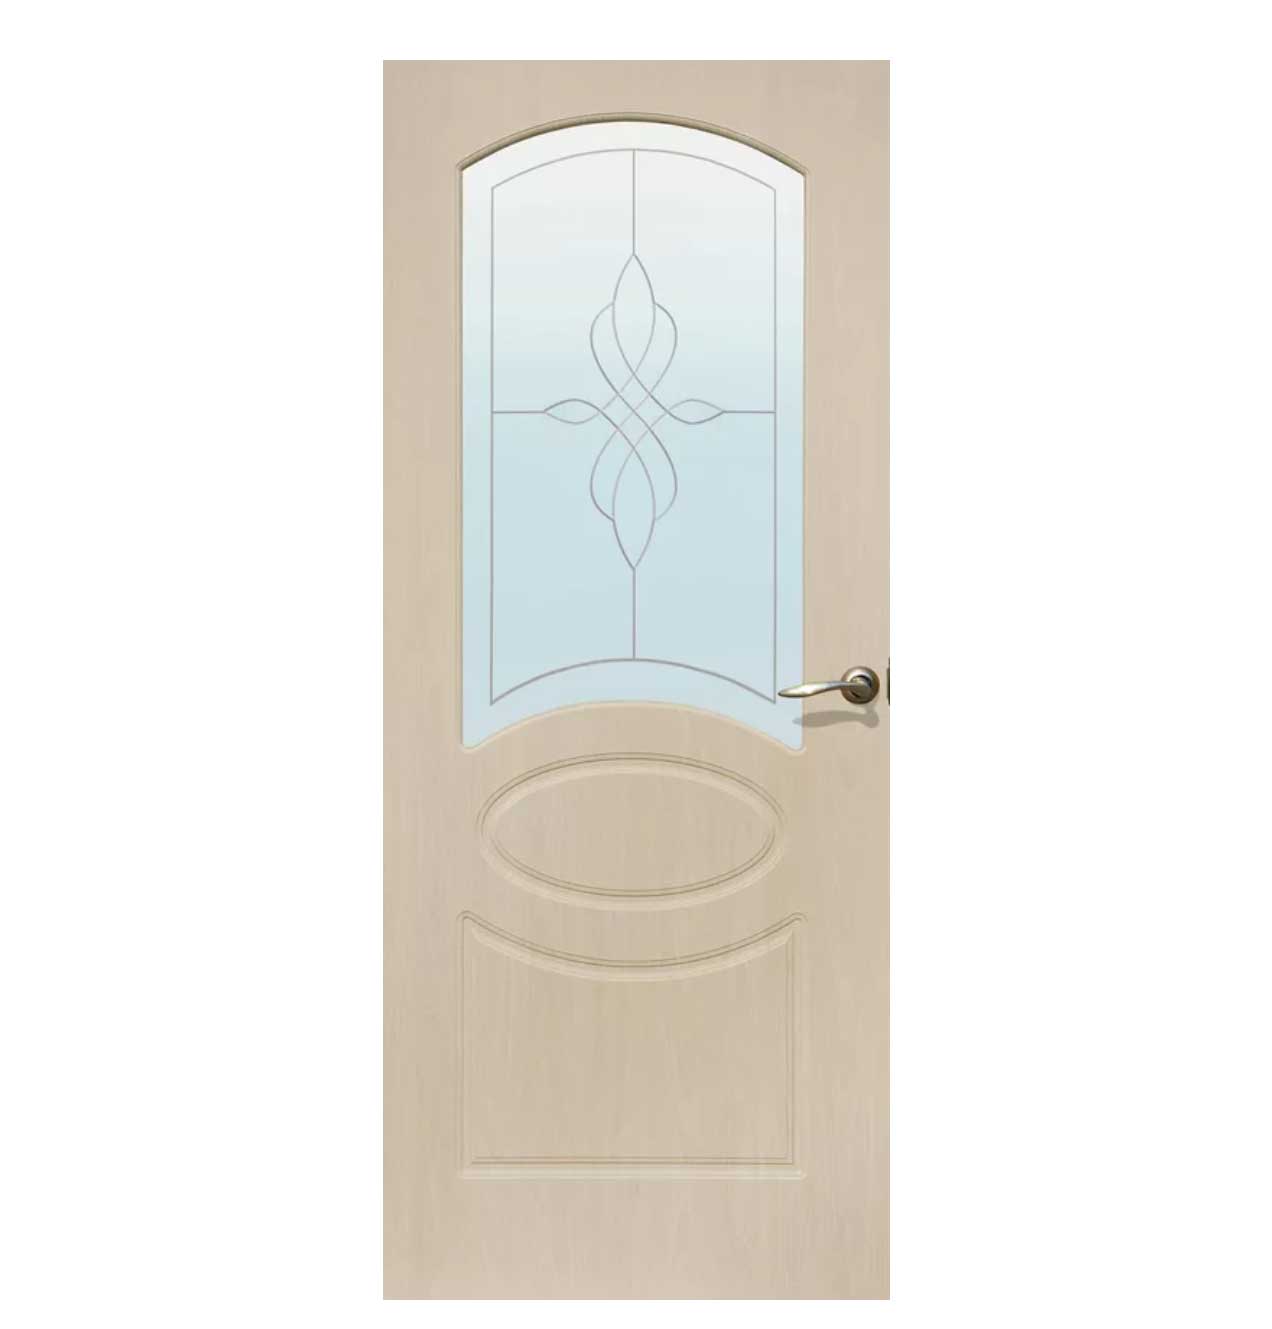 ξυλινες πορτες με γυαλι